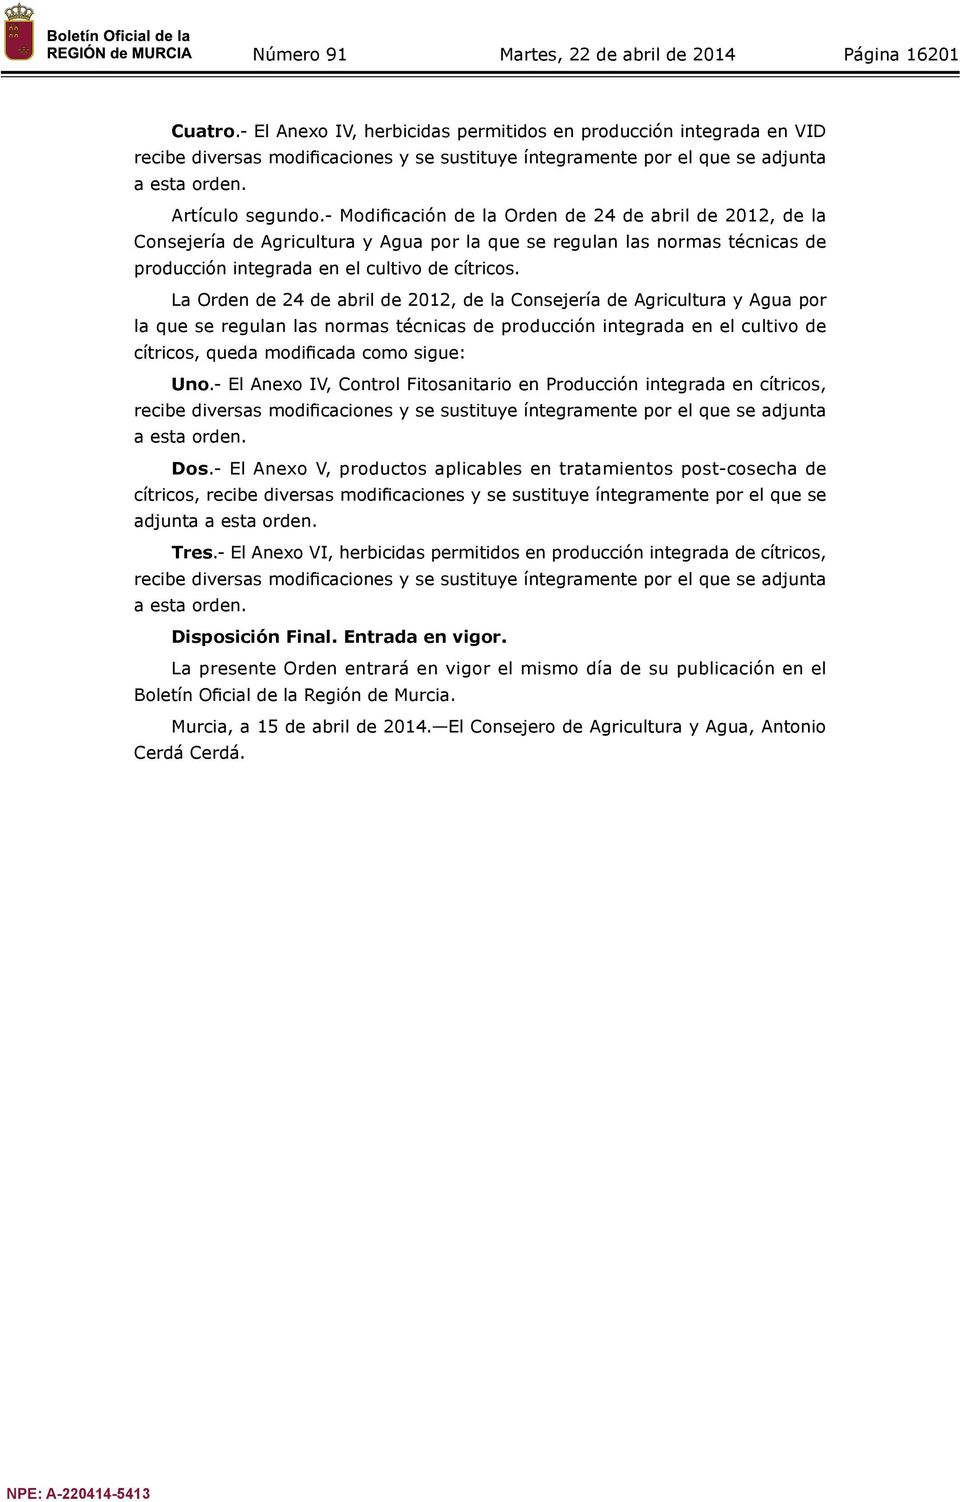 La Orden de 24 de abril de 2012, de la Consejería de Agricultura y Agua por la que se regulan las normas técnicas de producción integrada en el cultivo de cítricos, queda modificada como sigue: Uno.